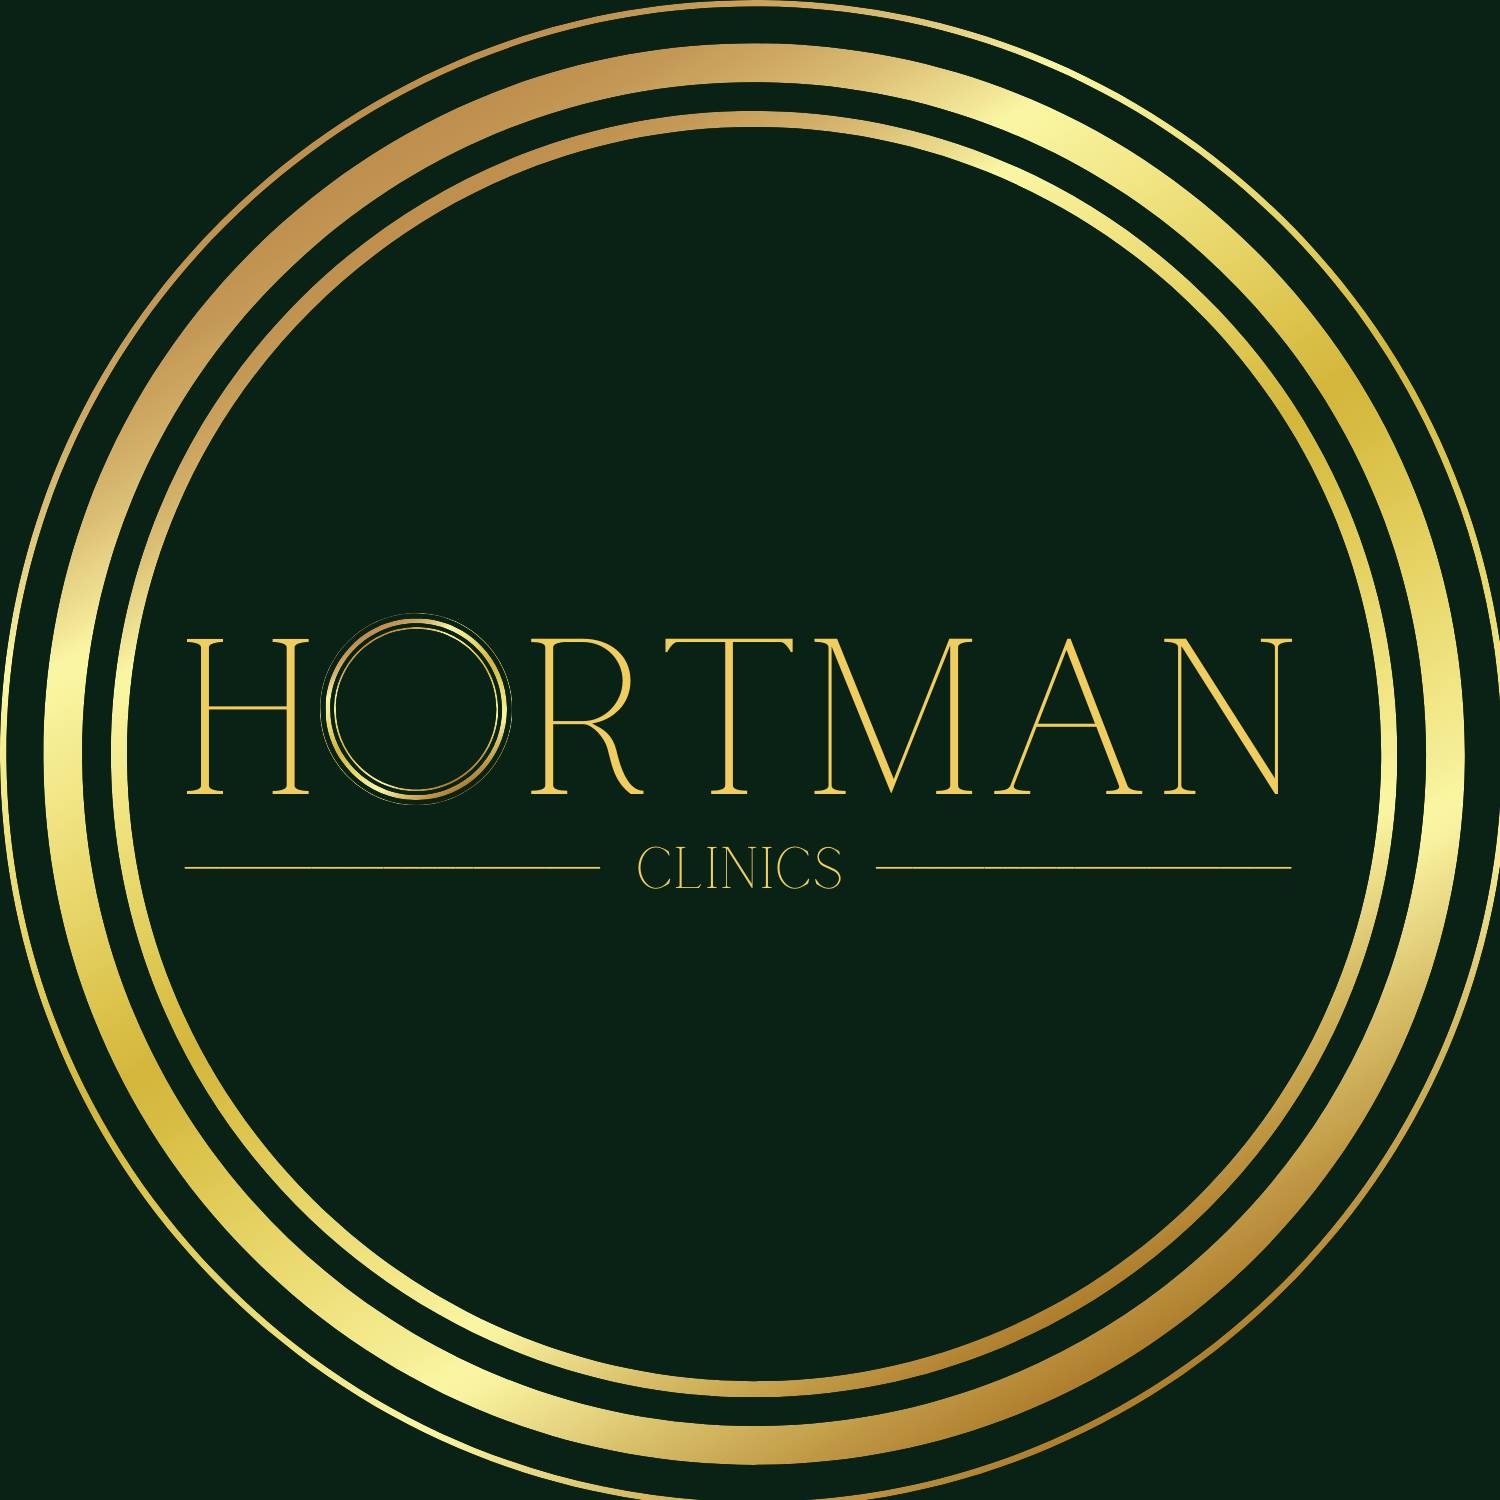 Hortman Clinics